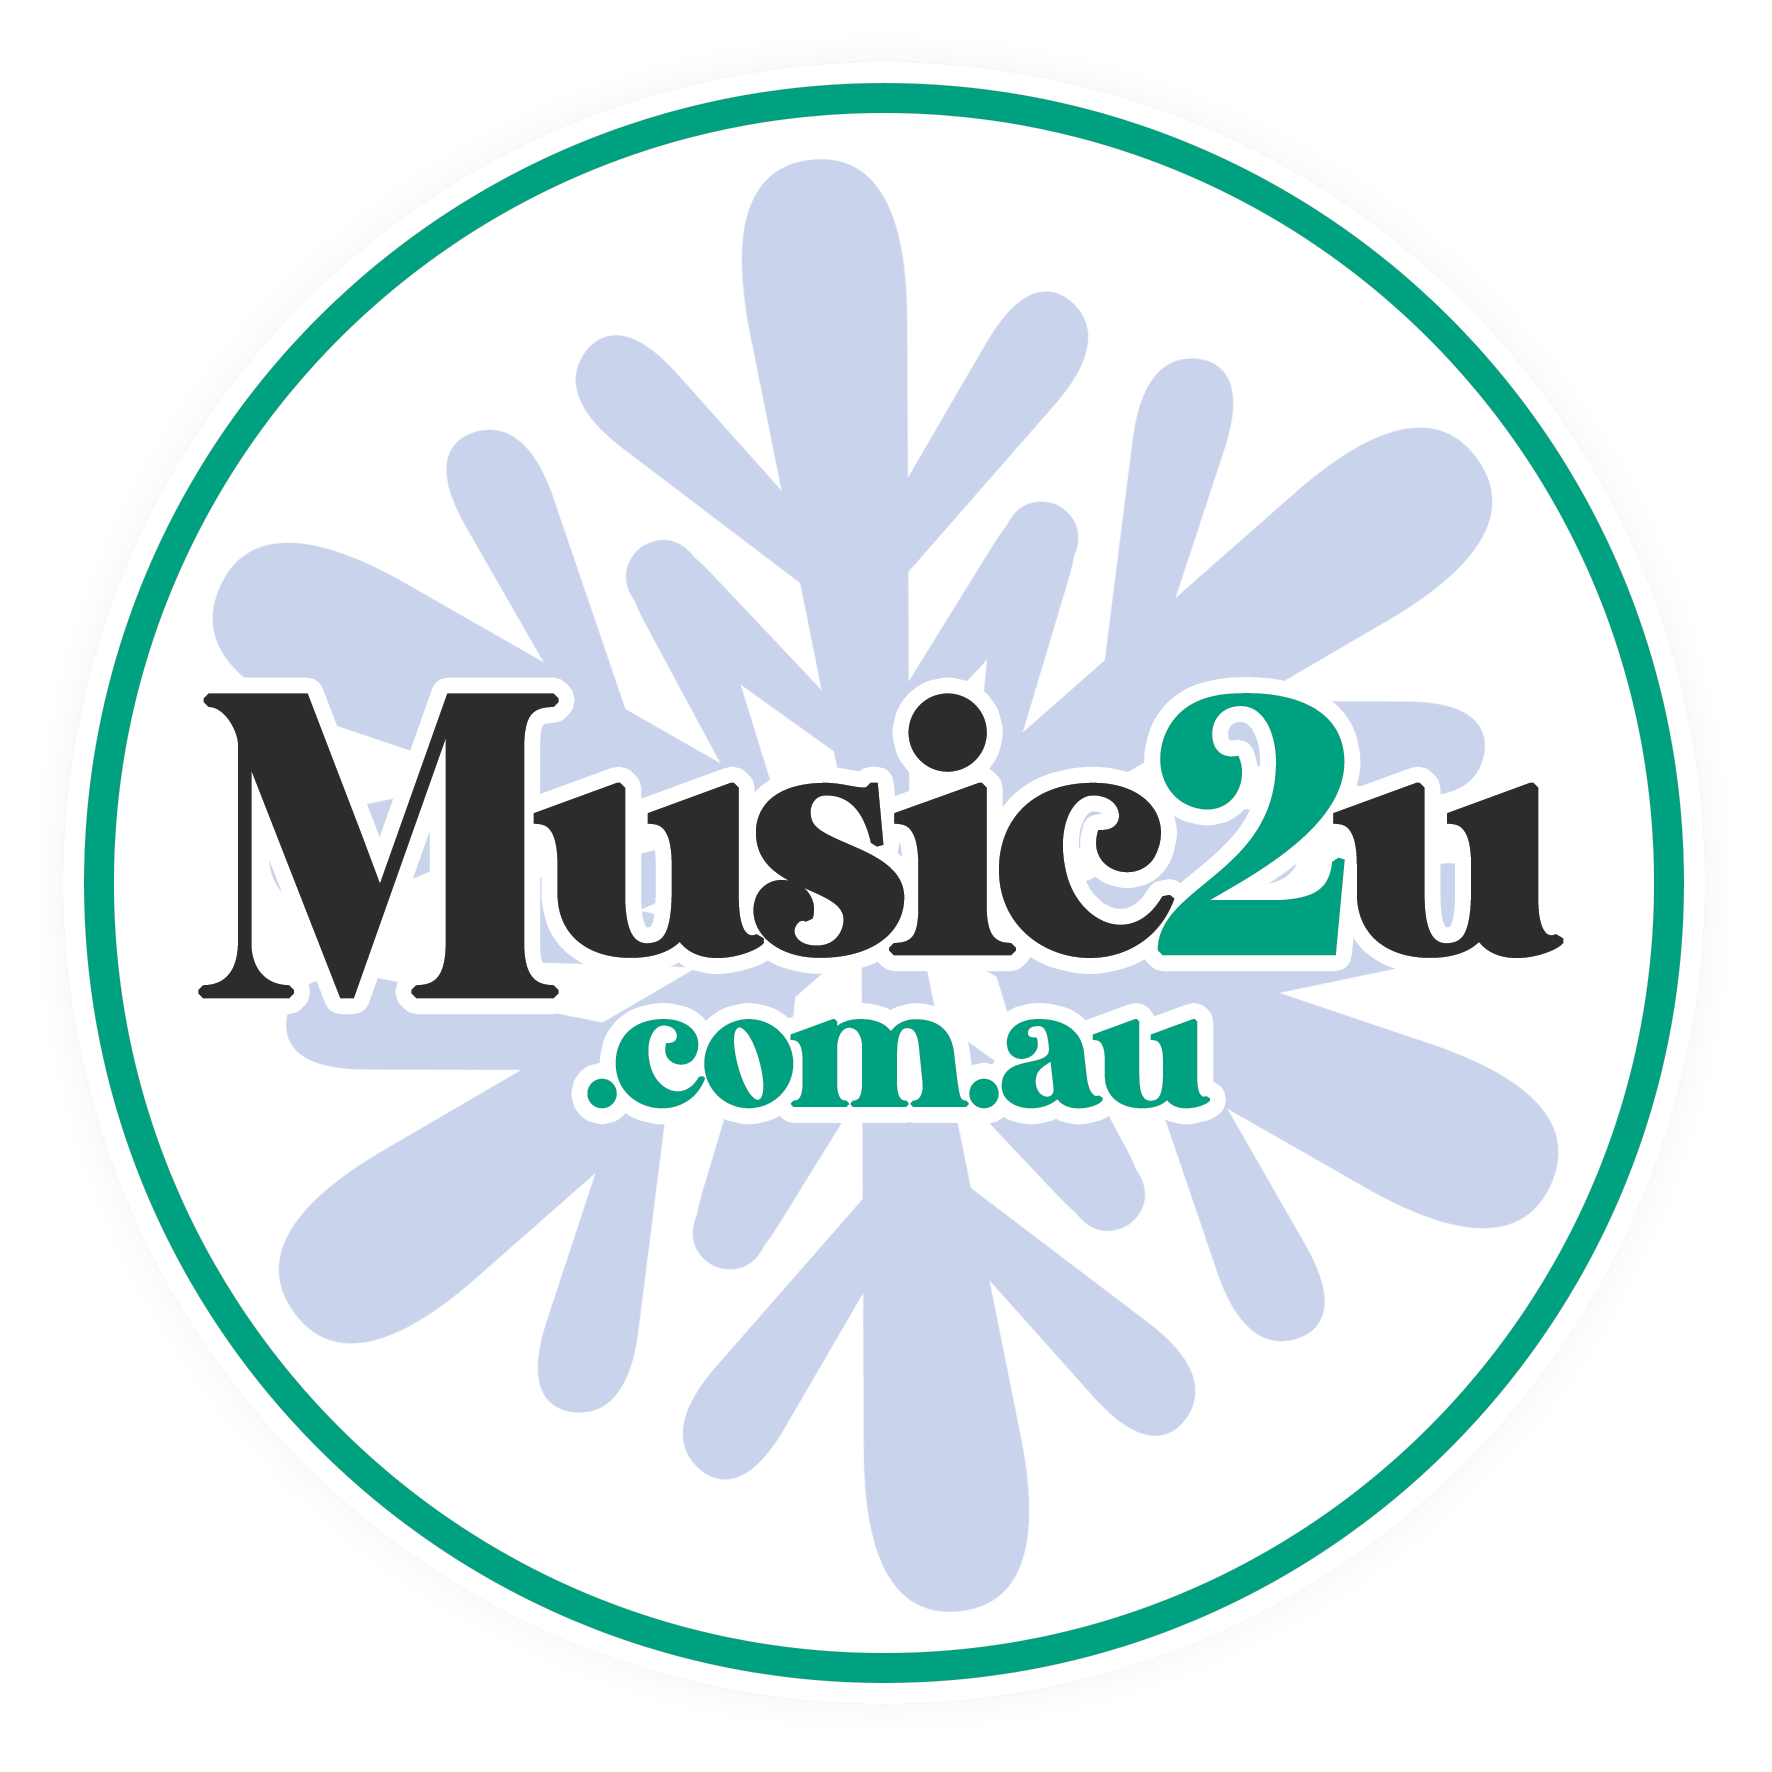 Music2u.com.au